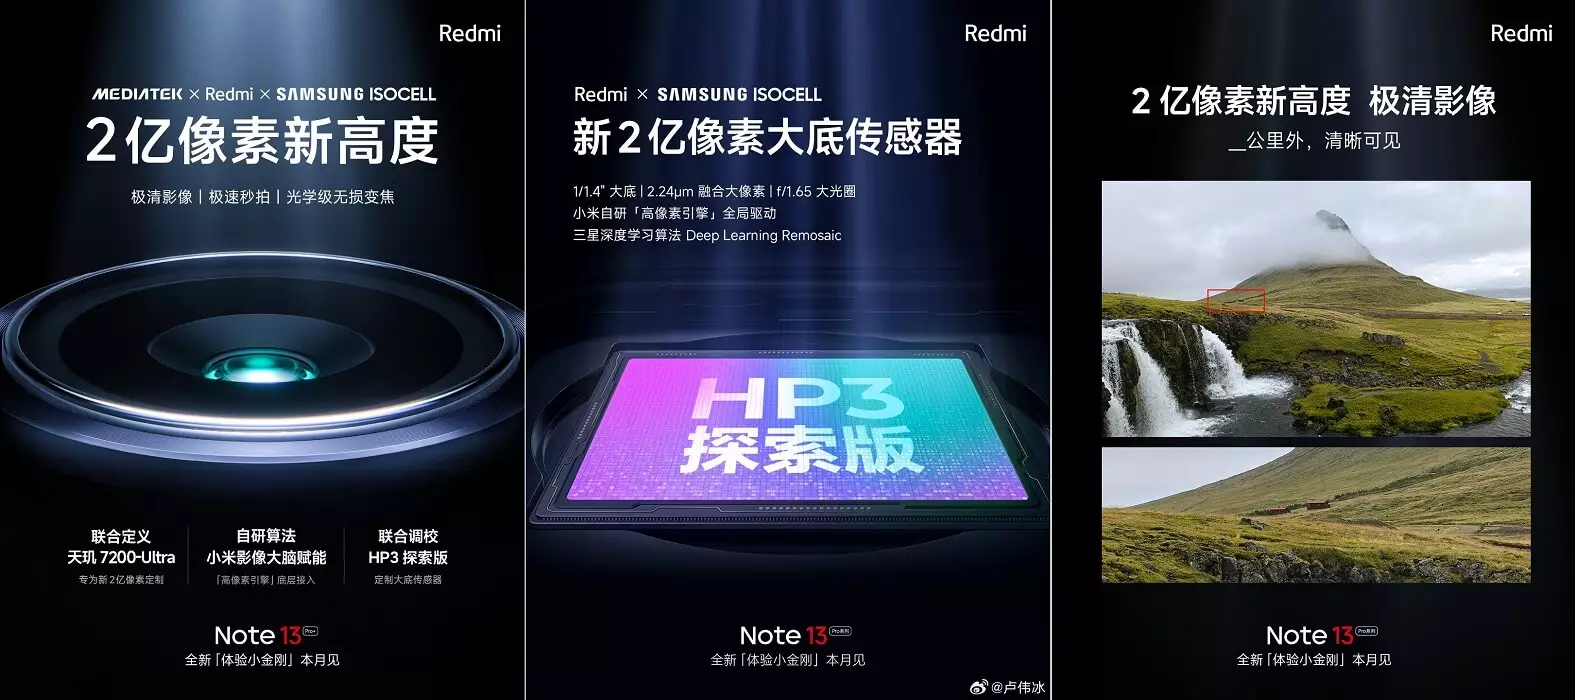 Redmi Note 13 Pro Plus camera features cn.